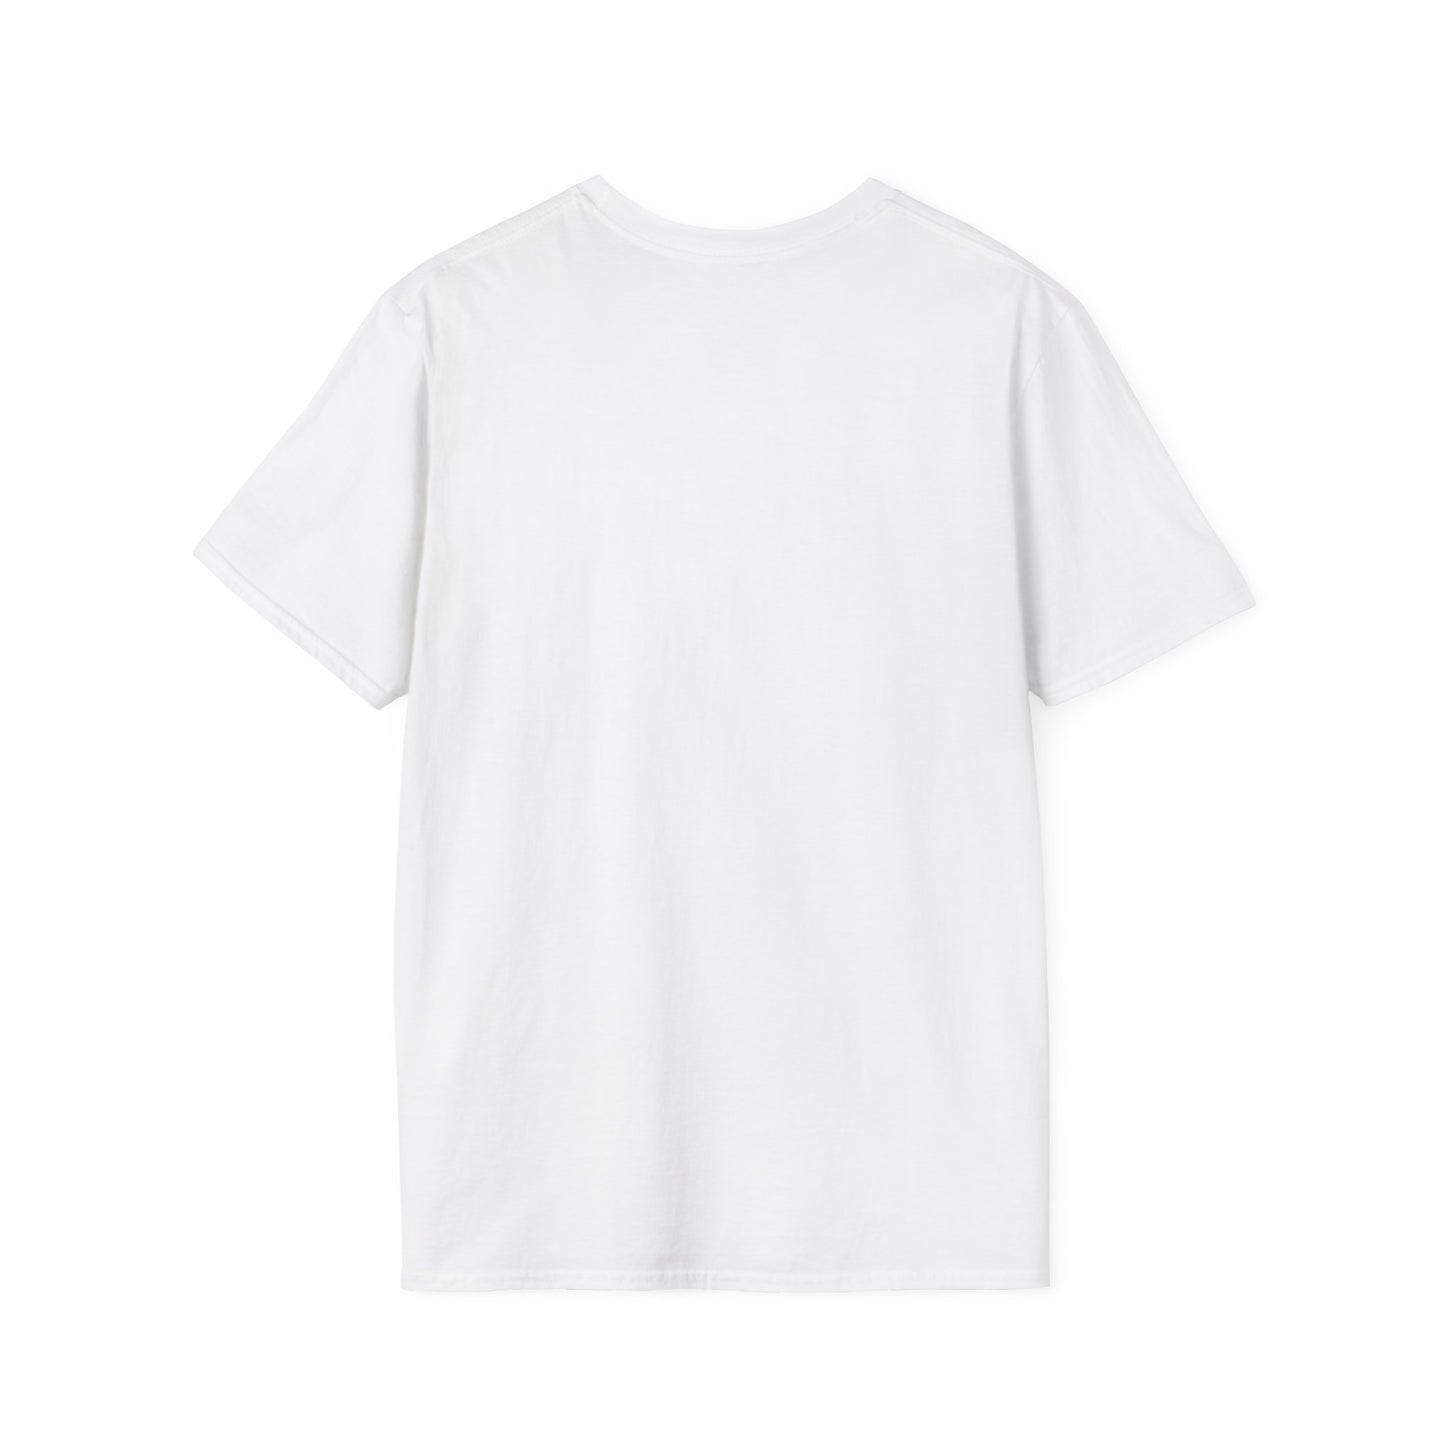 TONOPAWS Unisex Softstyle T-Shirt